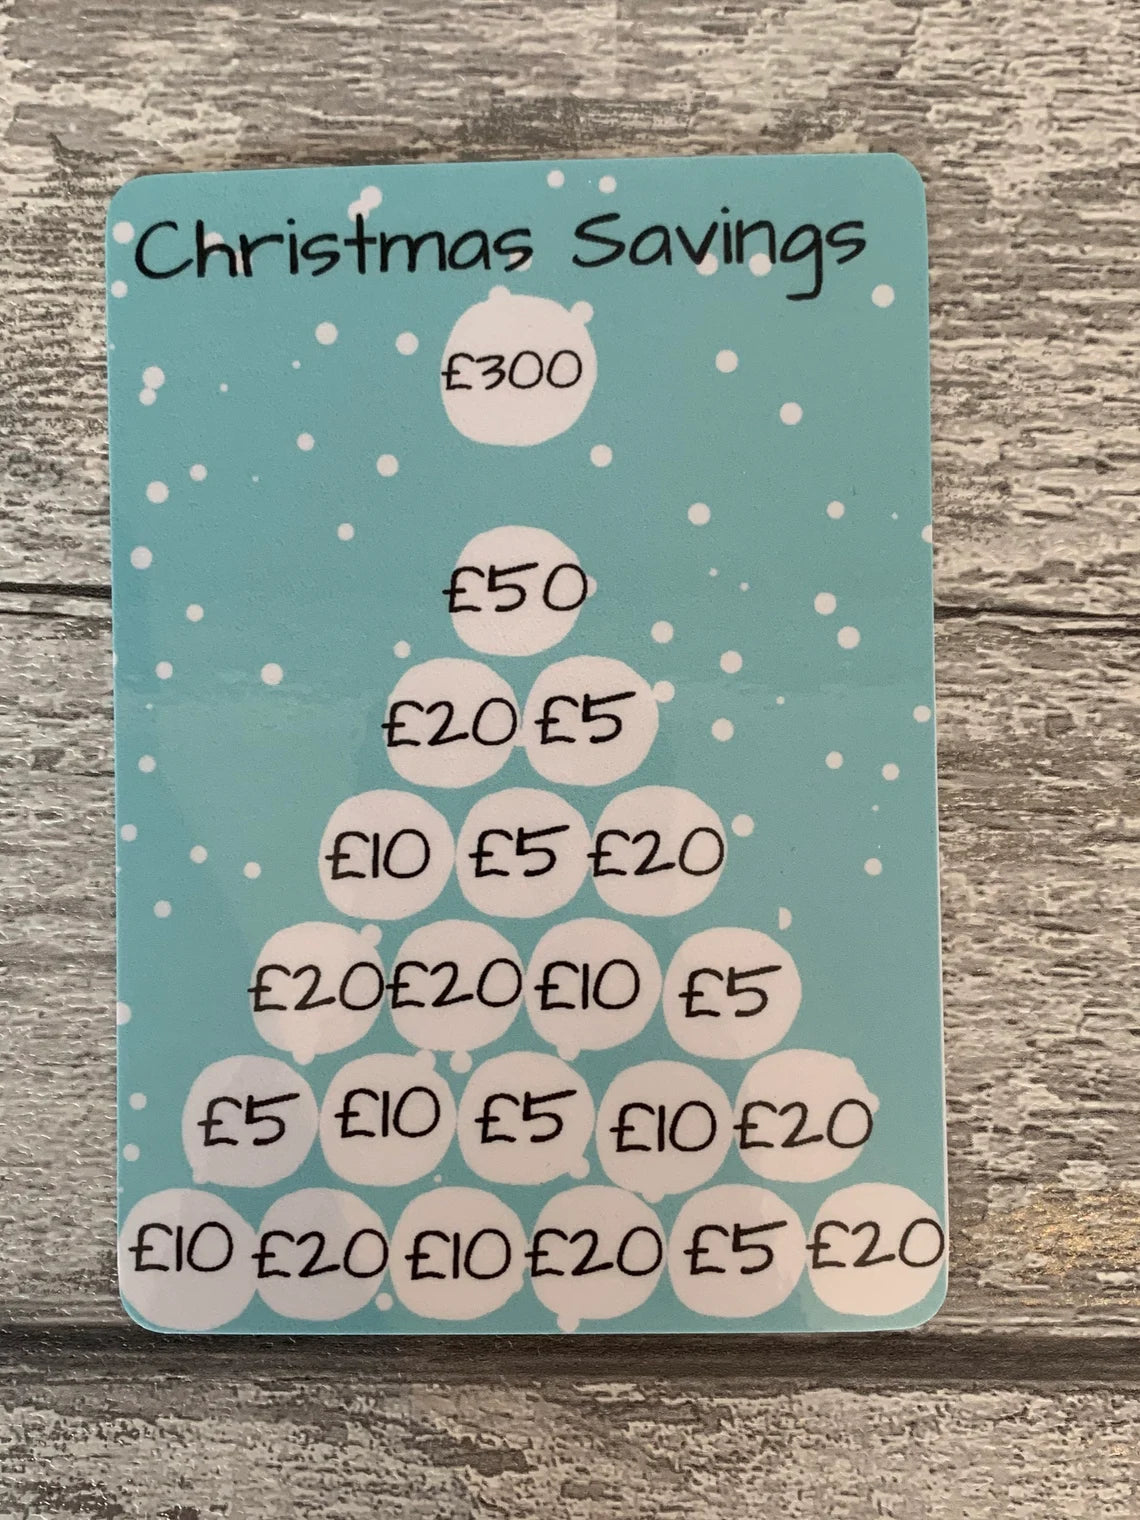 Christmas Savings Challenge - Save £300 or £500 – Madebysarah-mary